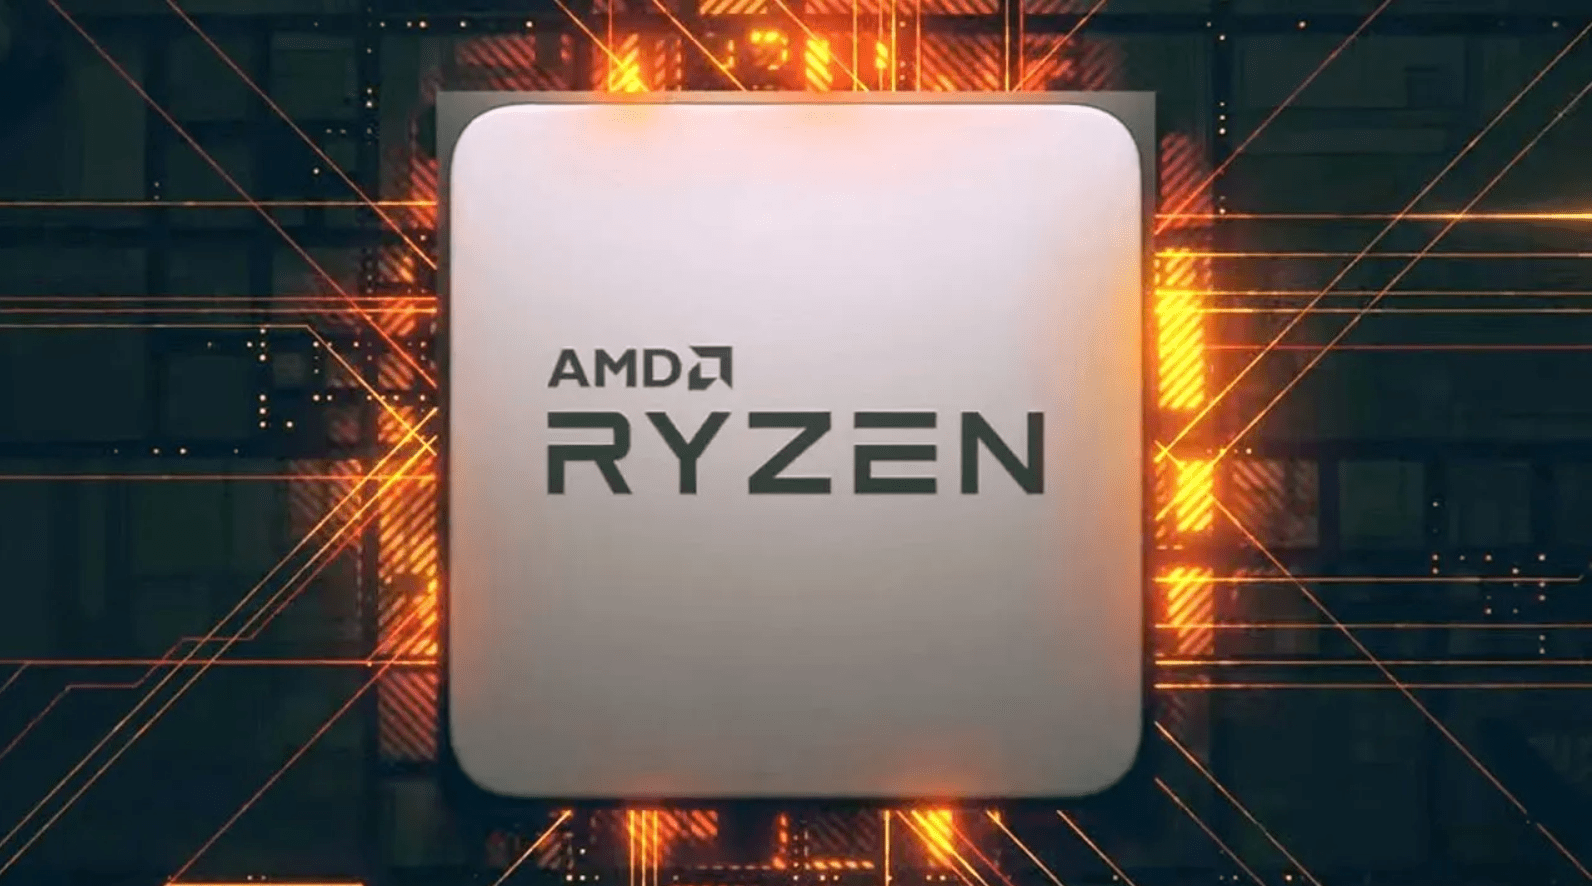 AMD anuncia processadores Ryzen 5000 baseados na arquitetura 7nm Zen 3